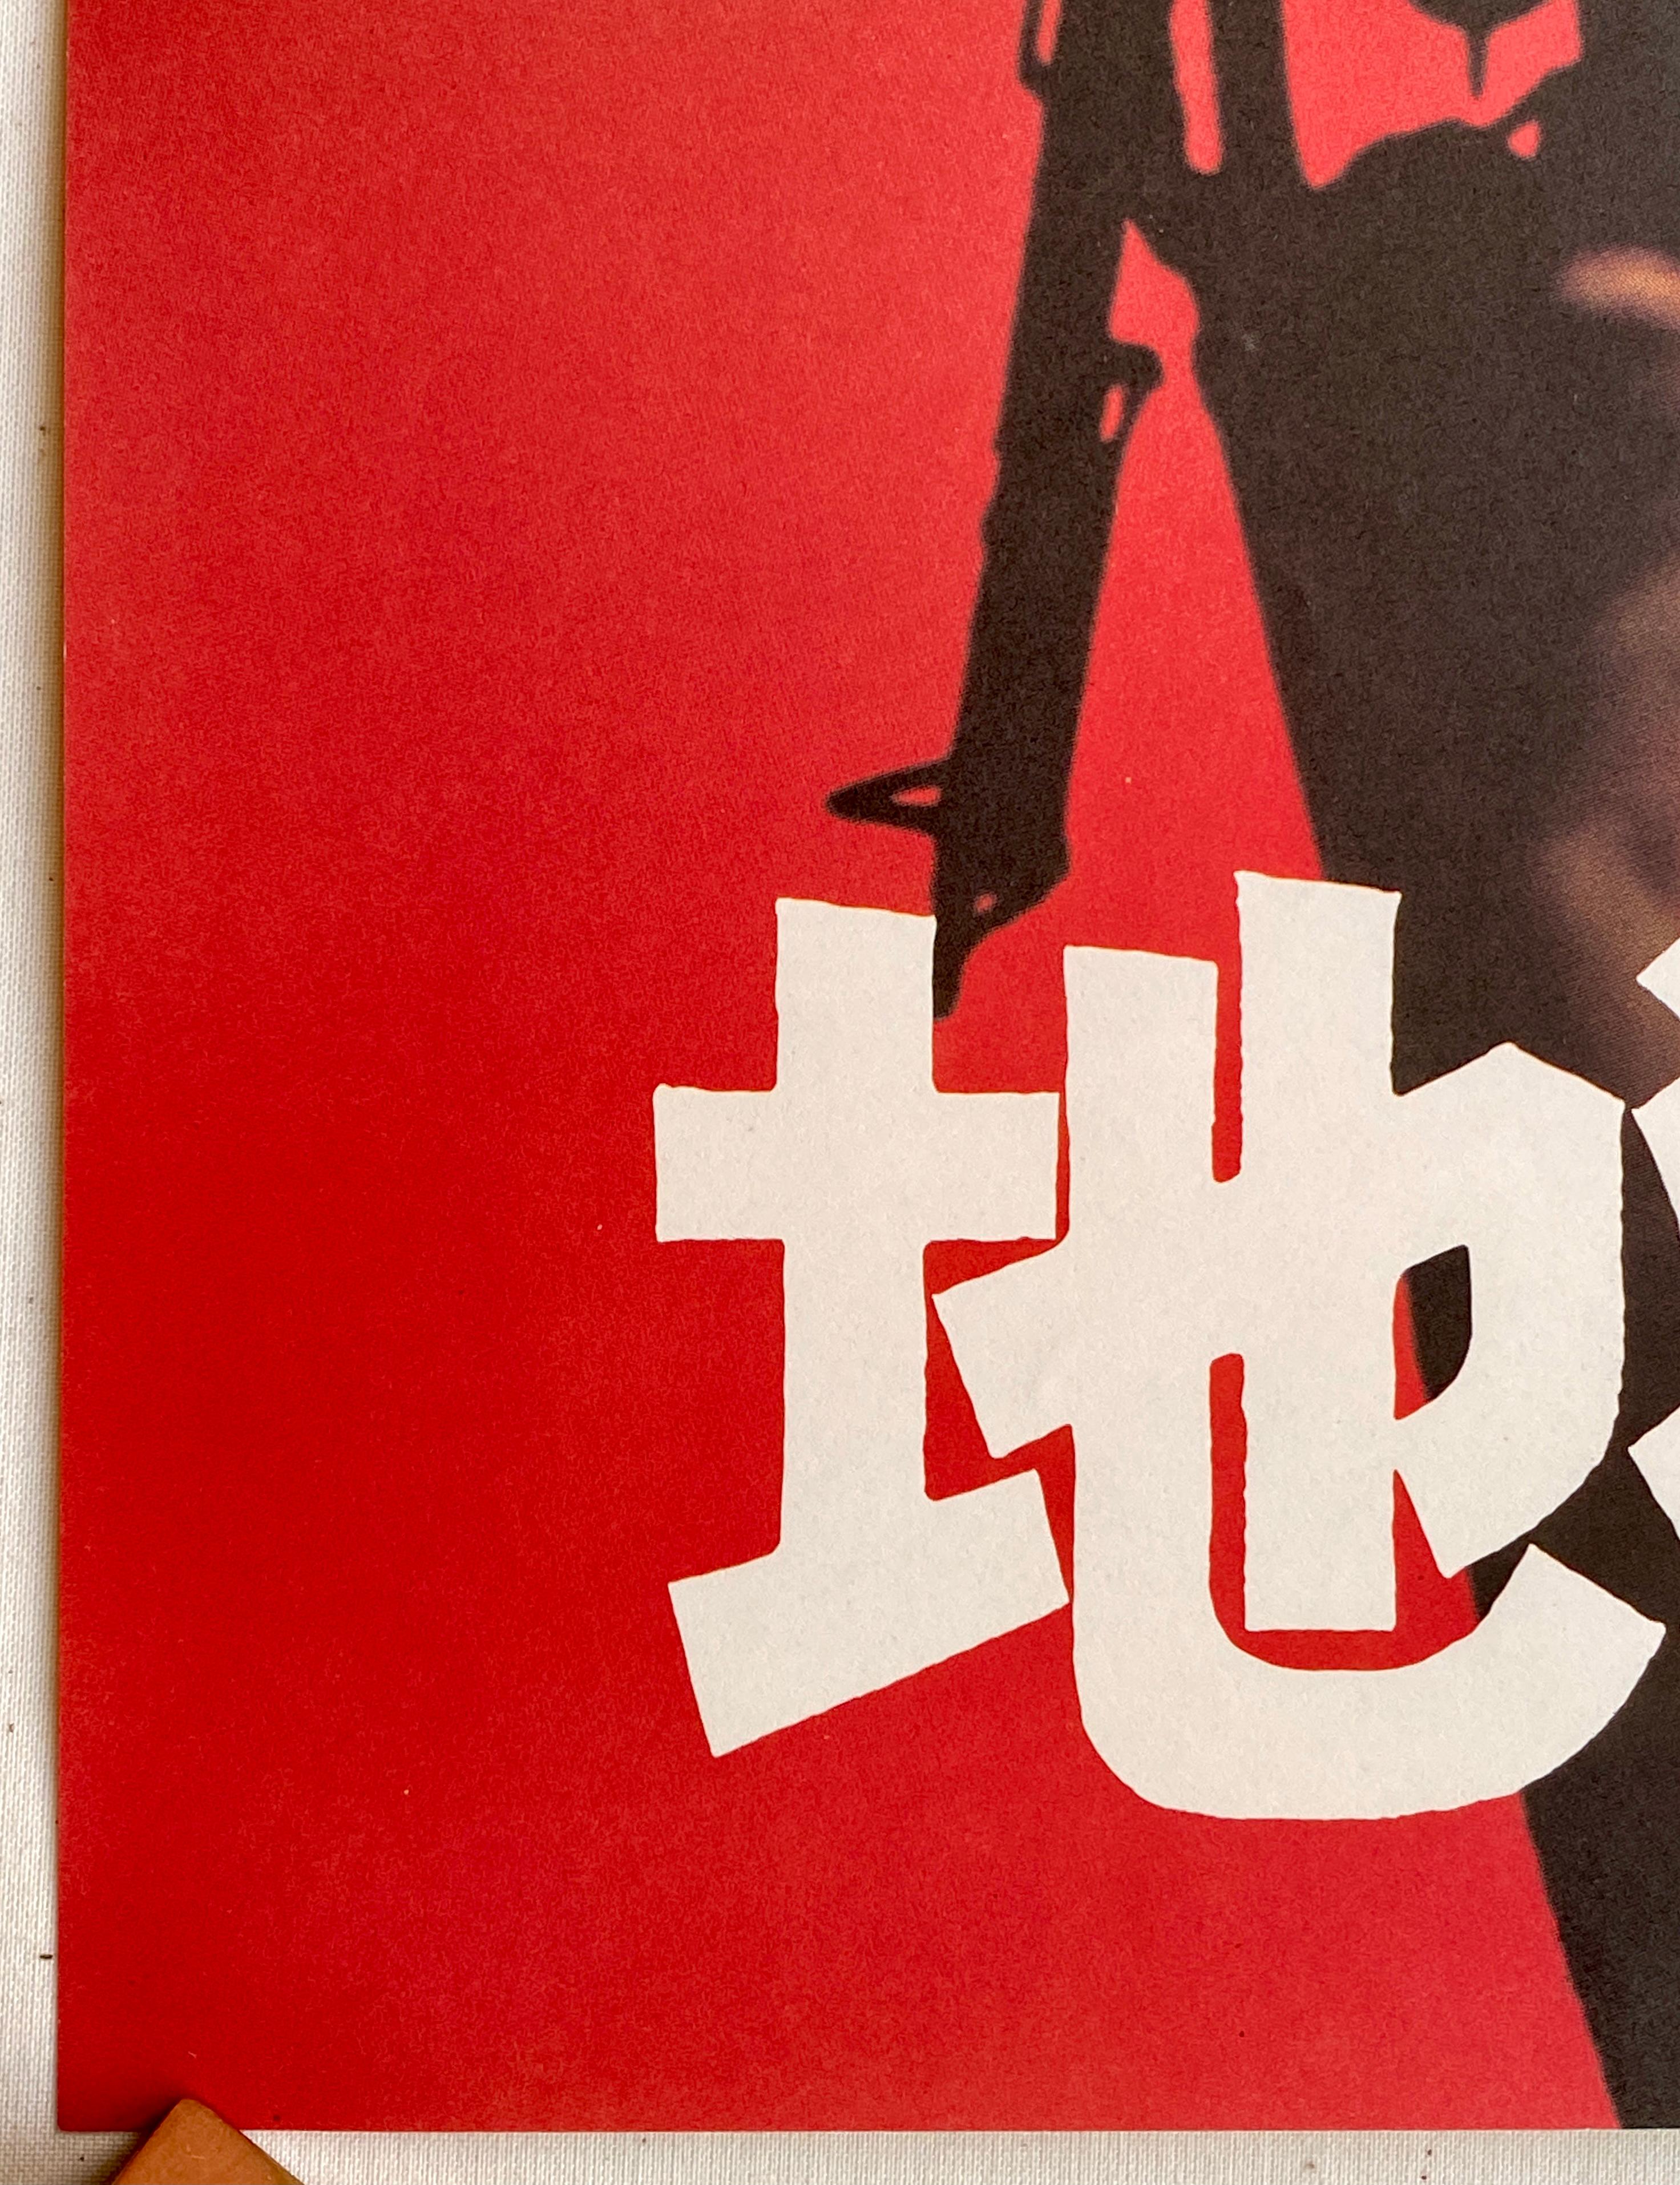 Late 20th Century 'Apocalypse Now' Original Vintage Japanese B2 Movie Poster, 1980